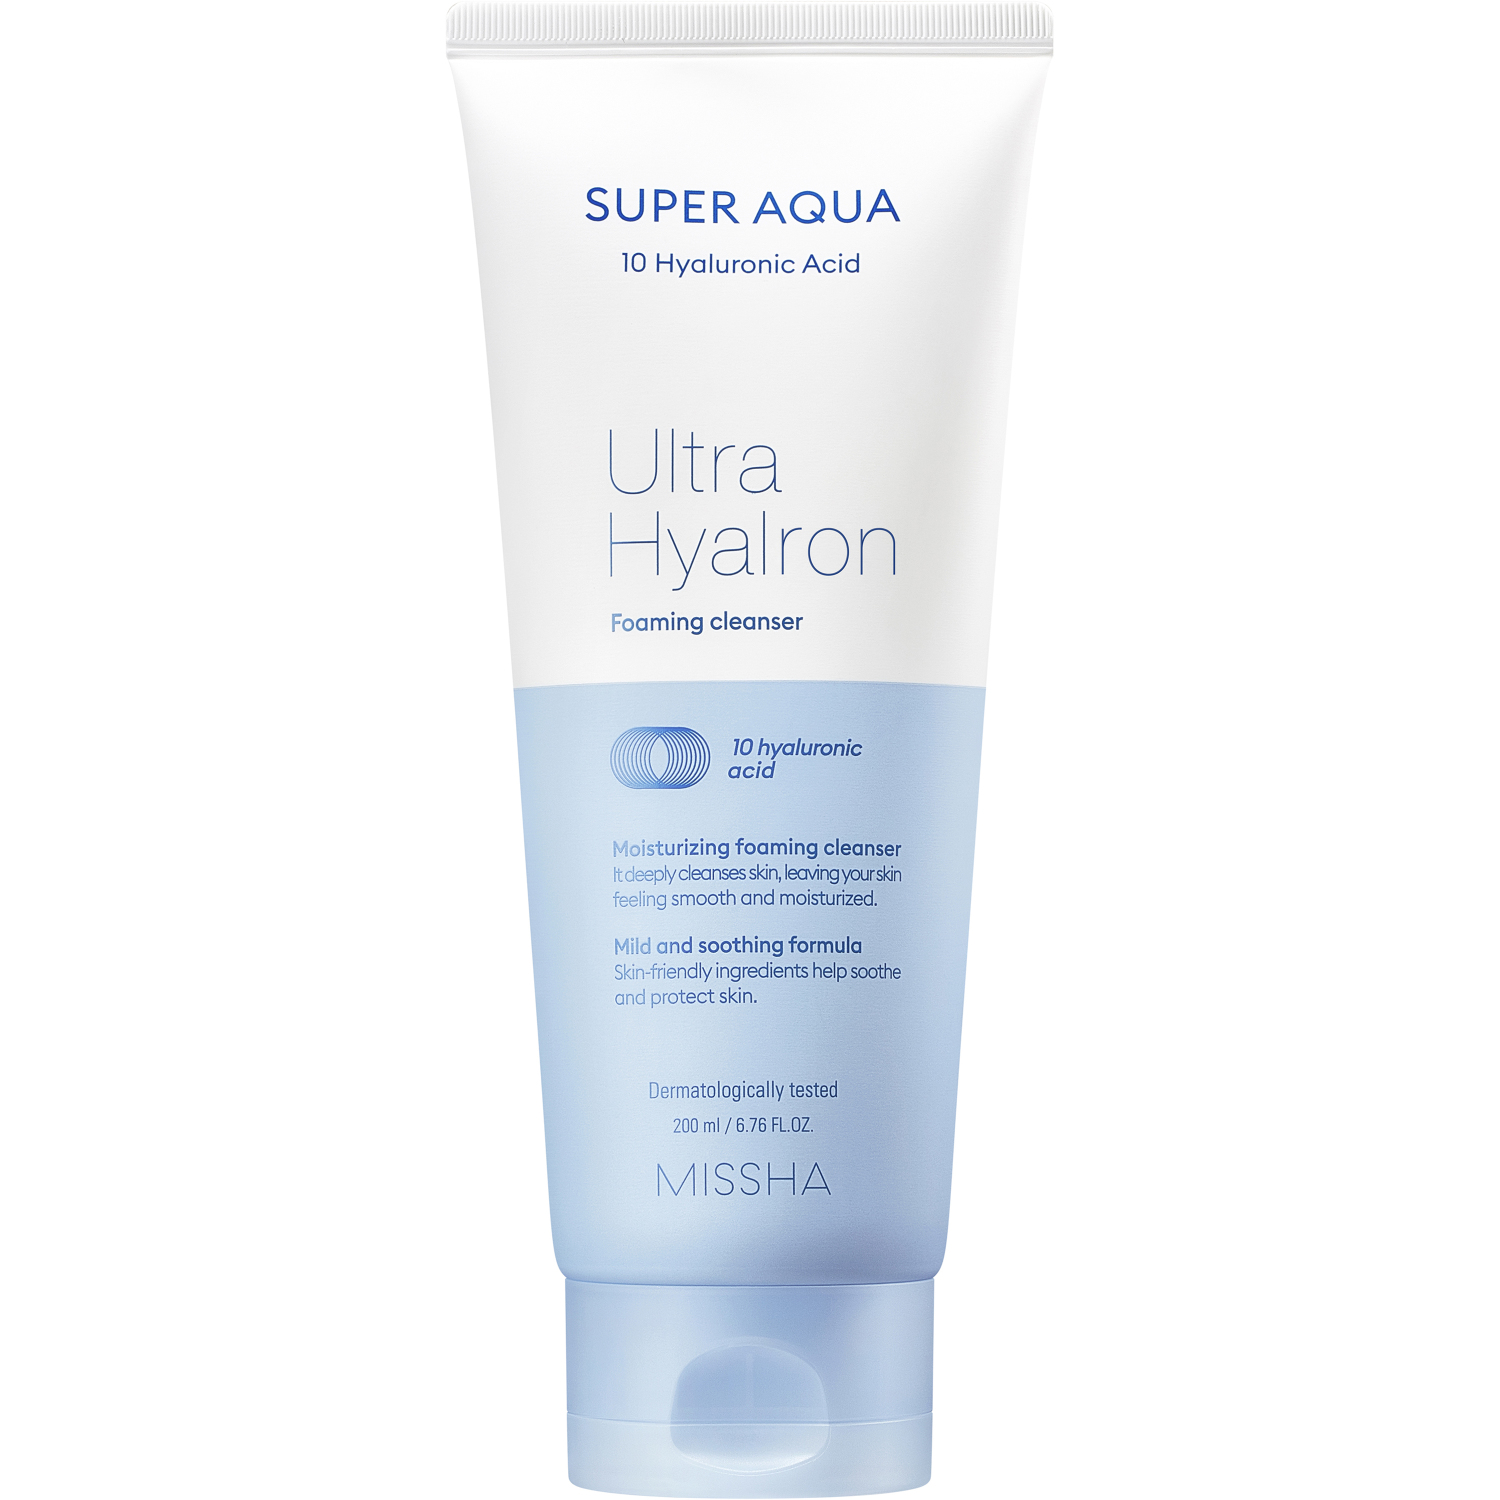 Пенка Missha Super Aqua Ultra Hyalron для умывания и снятия макияжа, 200 мл мусс для умывания missha пенка кремовая super aqua ultra hyalron для умывания и снятия макияжа